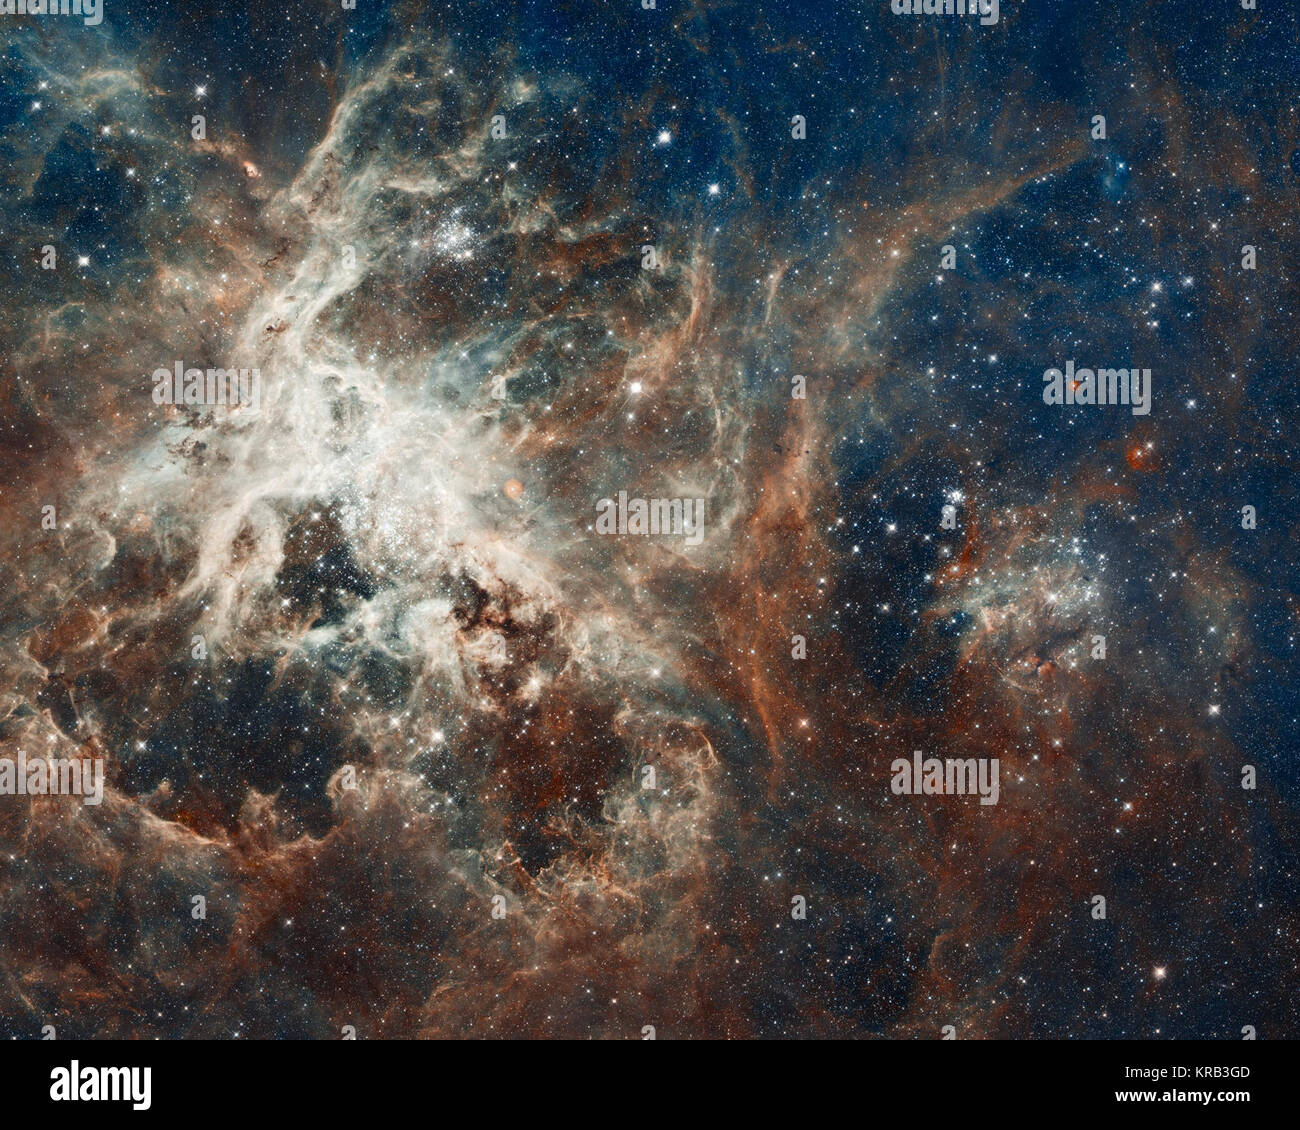 30 Doradus est l'étoile la plus brillante dans la région formant notre voisinage galactique et accueil d'étoiles les plus massives jamais vu. La nébuleuse se trouve 170 000 années-lumière dans le Grand Nuage de Magellan, une petite galaxie satellite de notre Voie Lactée. Aucune région d'étoiles dans notre galaxie est aussi grand ou aussi prolifiques que 30 Doradus. L'image comprend l'un des plus importants jamais constituée de mosaïques photos de Hubble et comprend des observations prises par caméra à champ large de Hubble 3 et avancés pour les enquêtes de l'appareil photo, combinée avec les observations de l'Observatoire Européen Austral's MPG/ESO de 2,2 mètres de télescope Banque D'Images